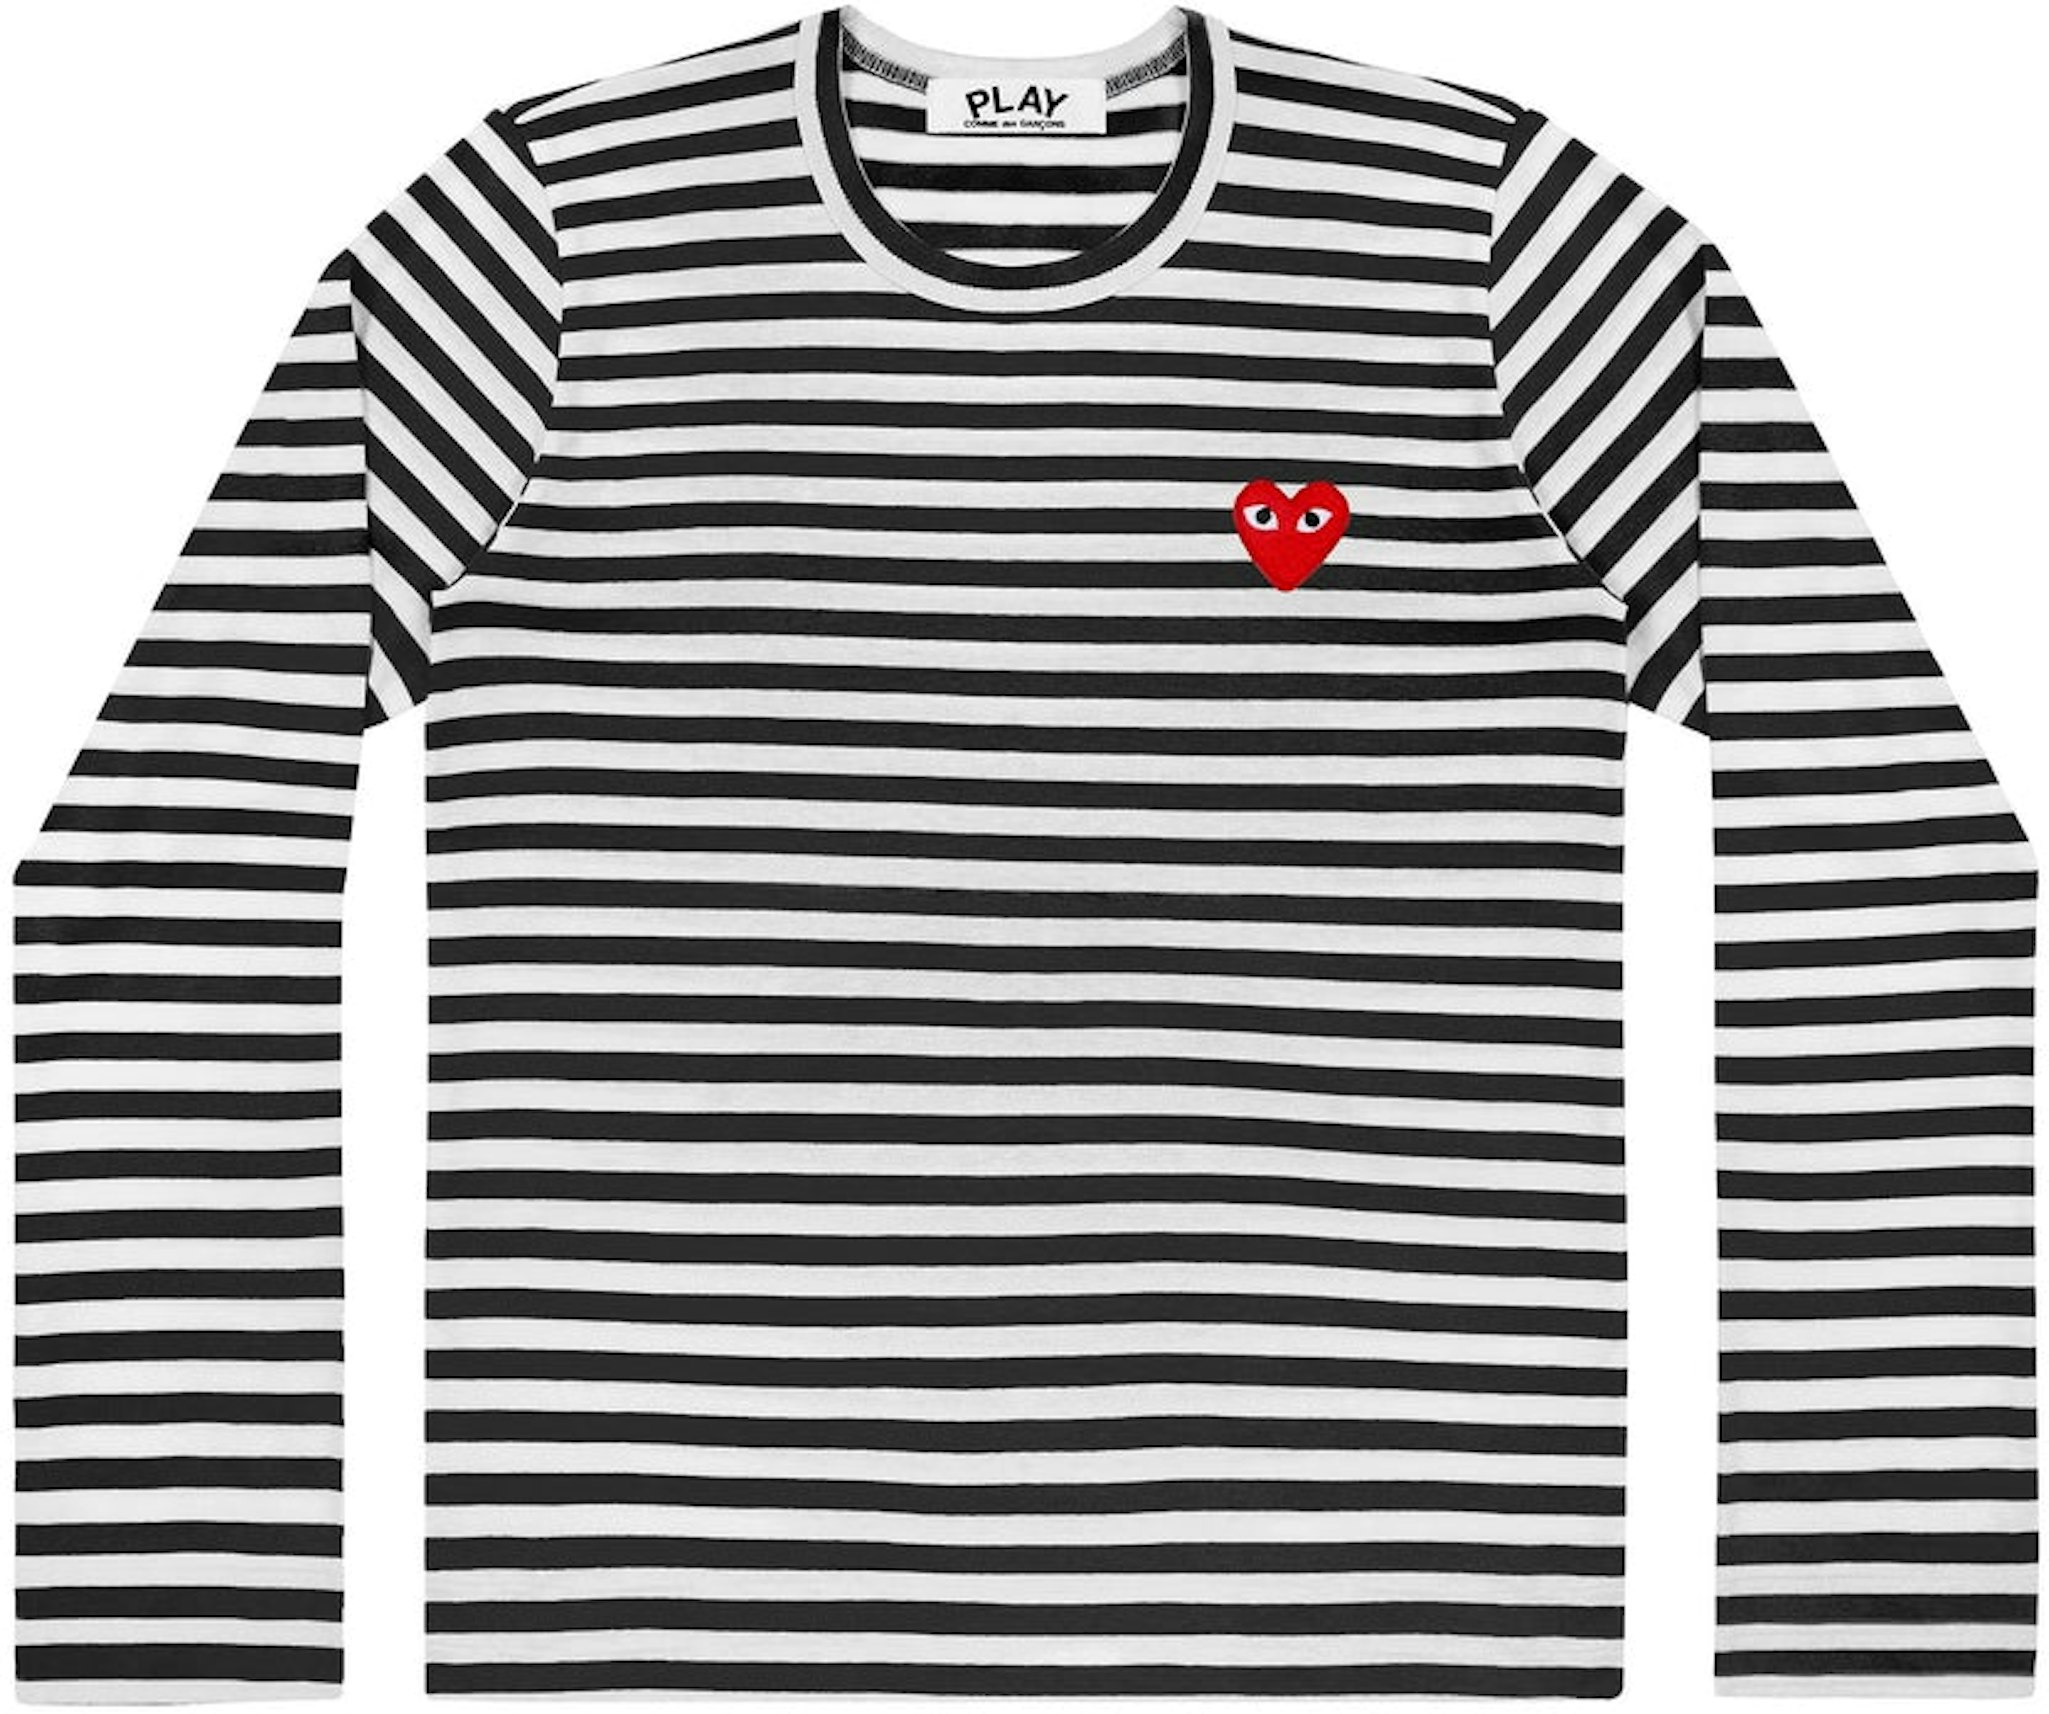 Mark bud Koge CDG Play Striped Long Sleeve T-shirt Black/White Men's - US